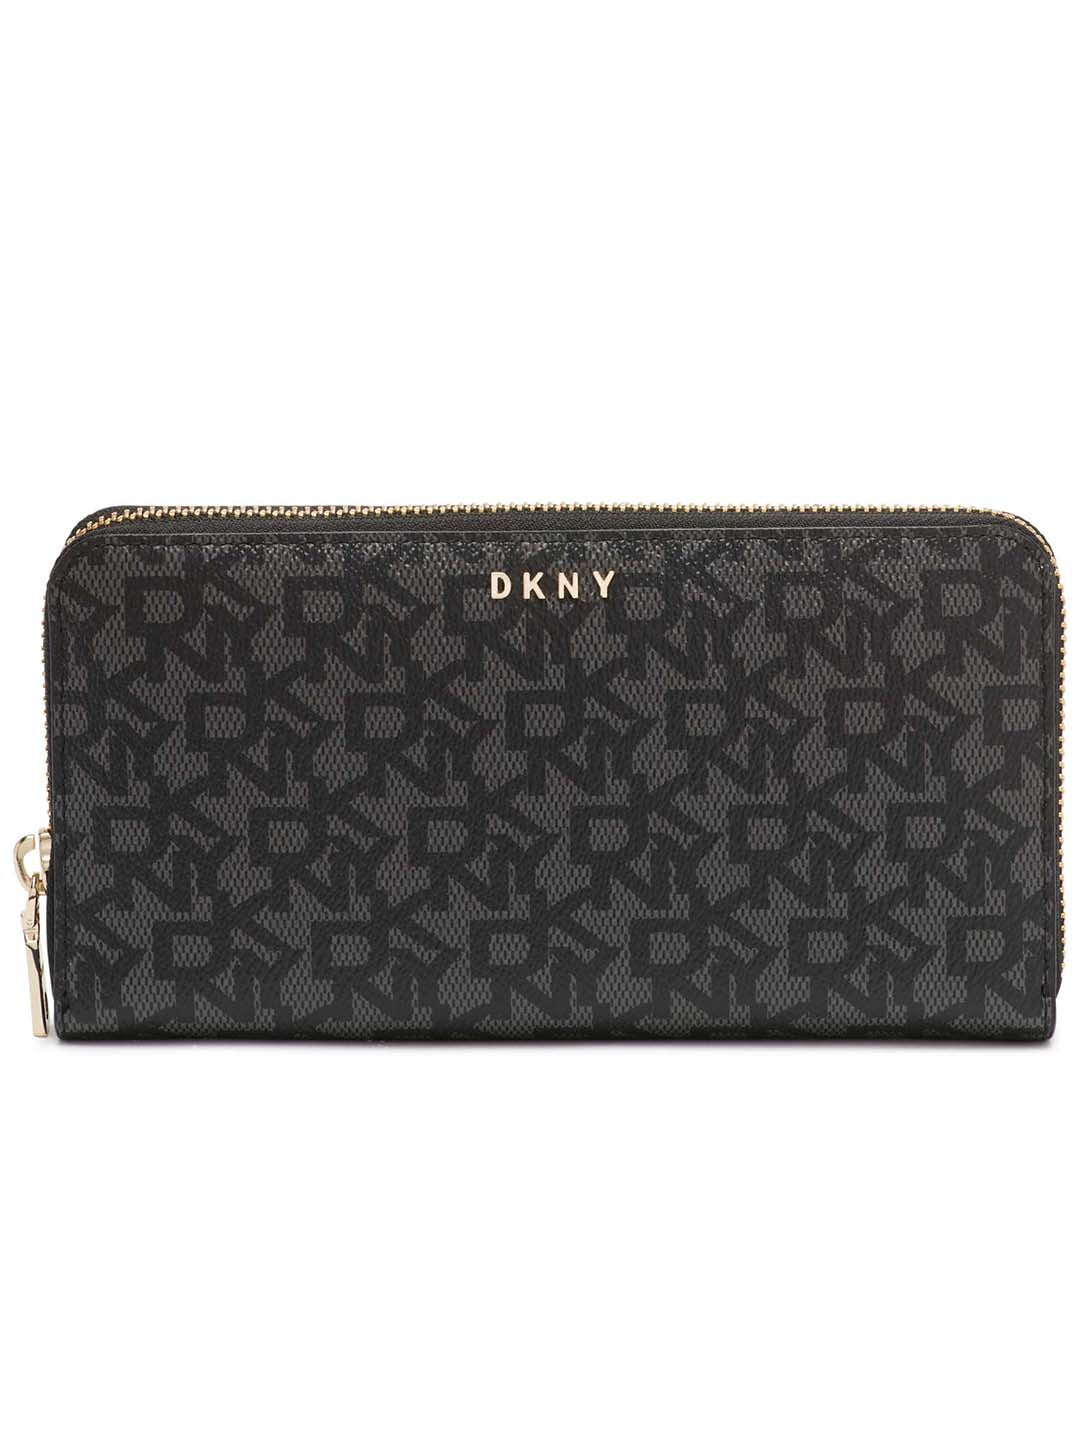 DKNY Women Black Printed Wallet